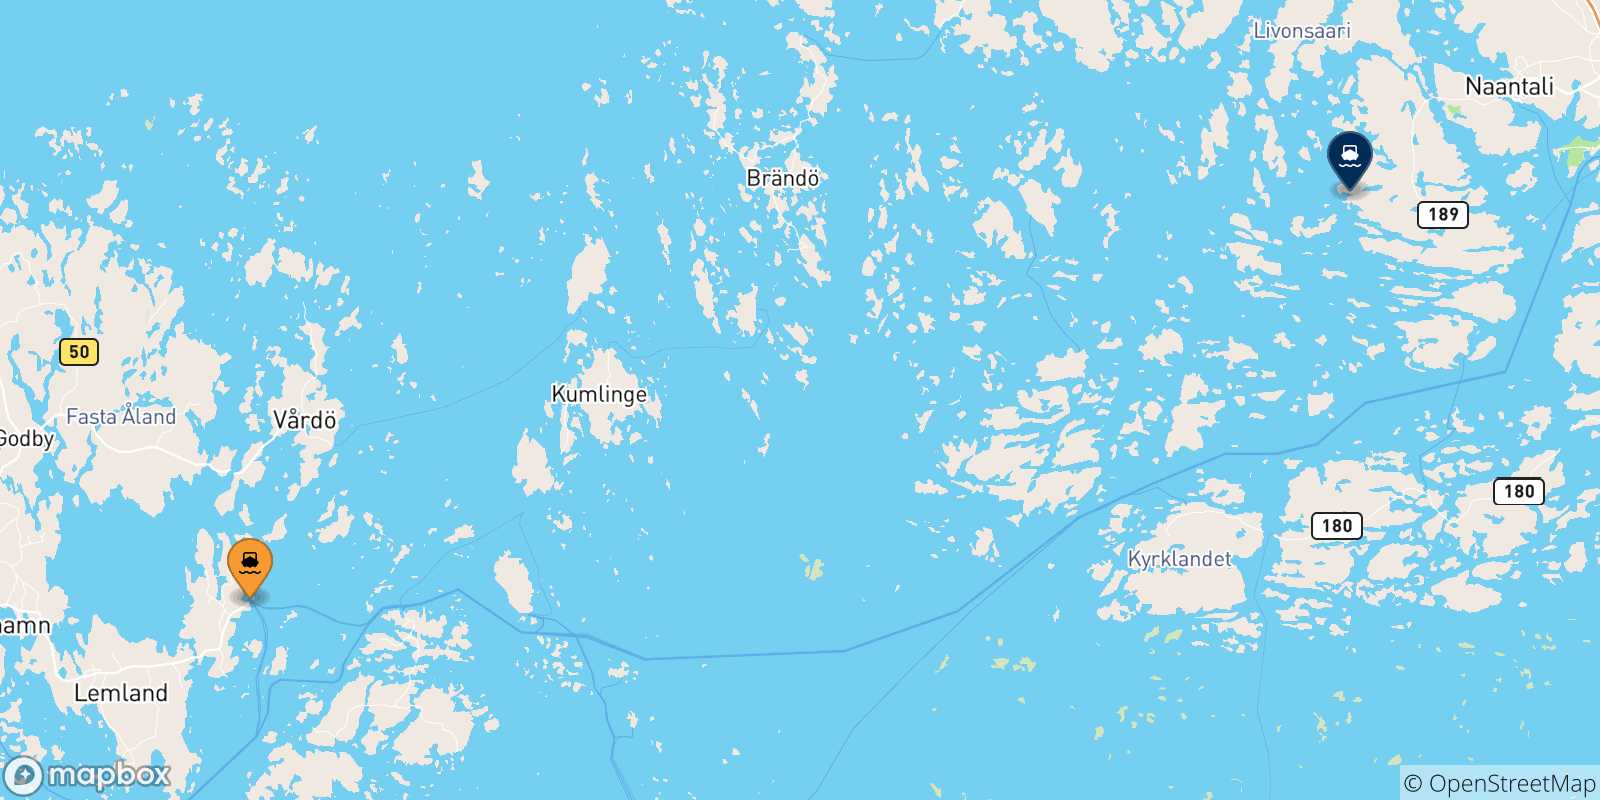 Mappa delle possibili rotte tra la Finlandia e Naantali